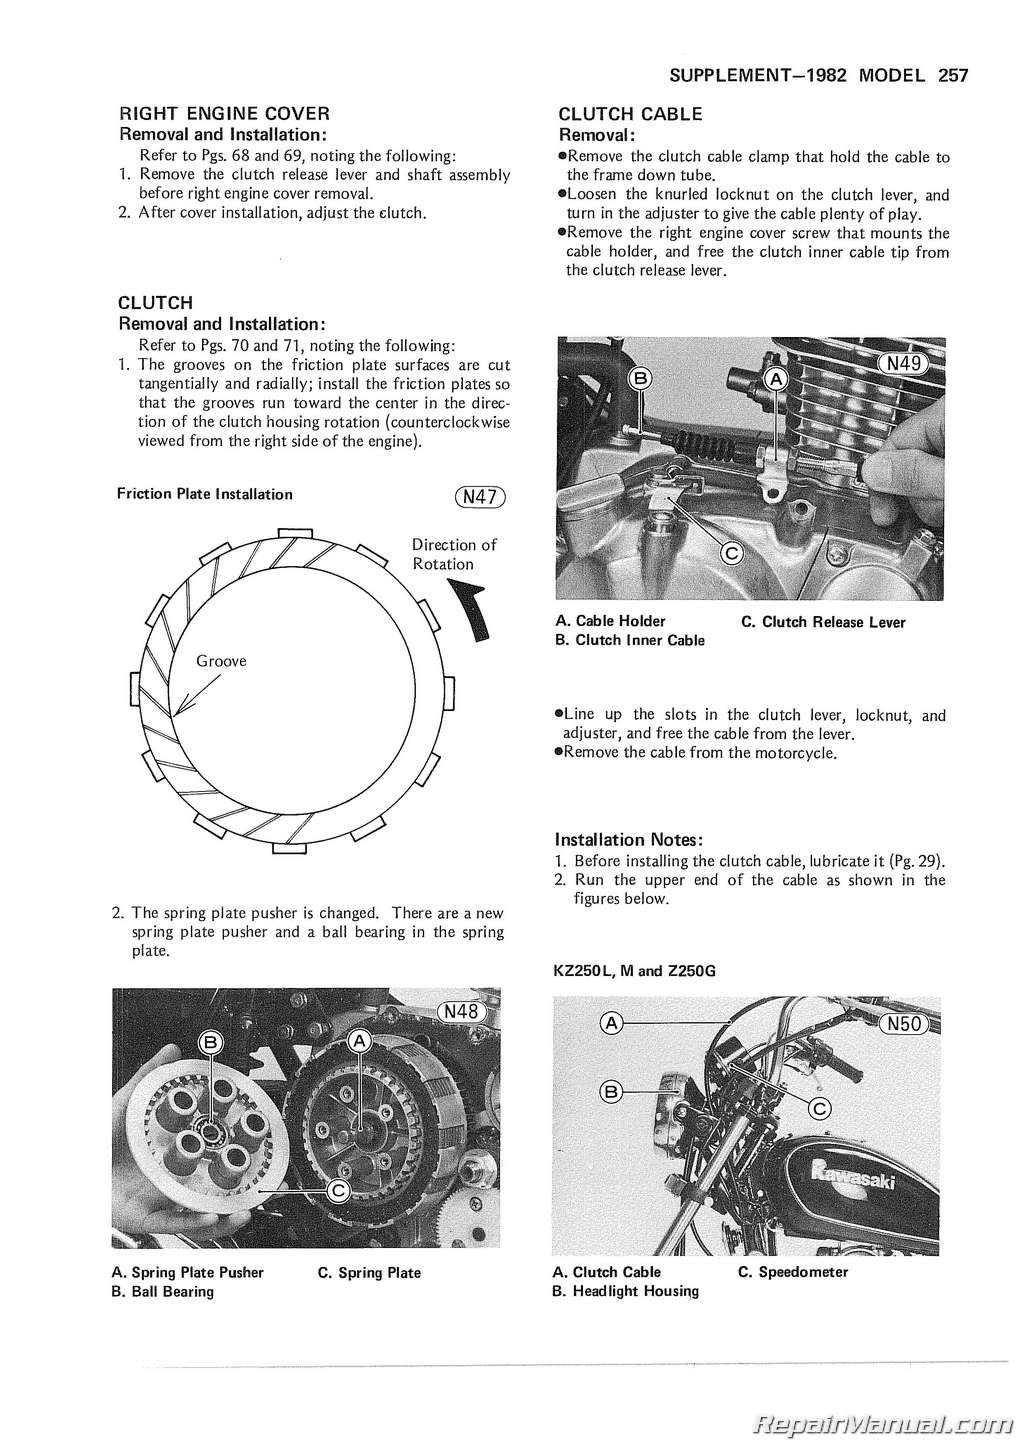 1980-1983 Motorcycle Repair Service Manual